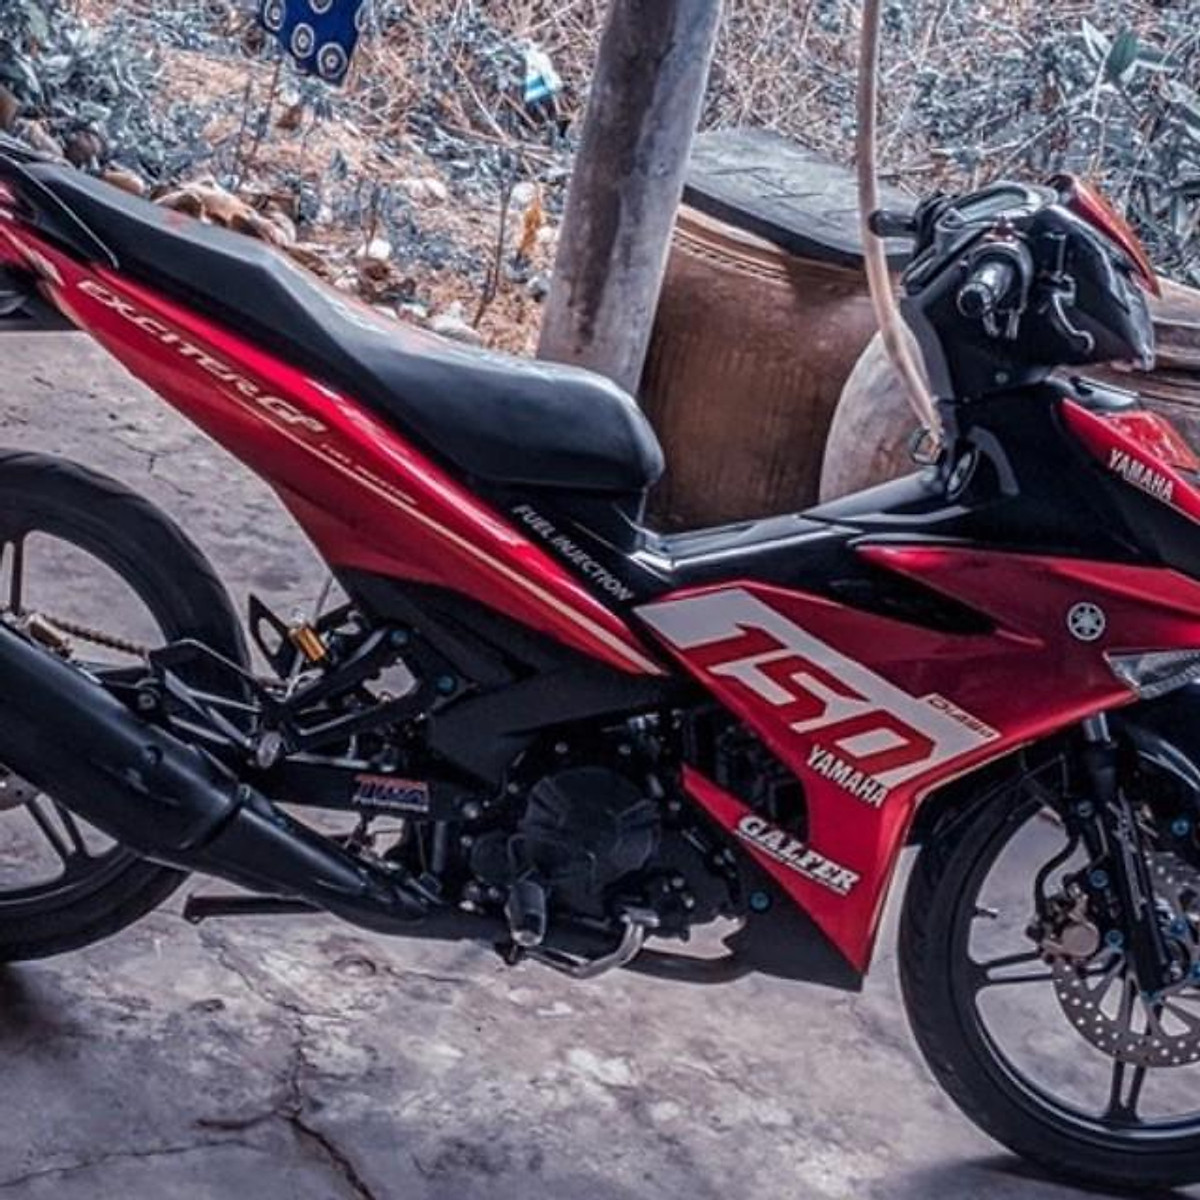 Yamaha Exciter 150 trắng đỏ RC chính chủ 2018    Giá 255 triệu   0585586316  Xe Hơi Việt  Chợ Mua Bán Xe Ô Tô Xe Máy Xe Tải Xe Khách  Online